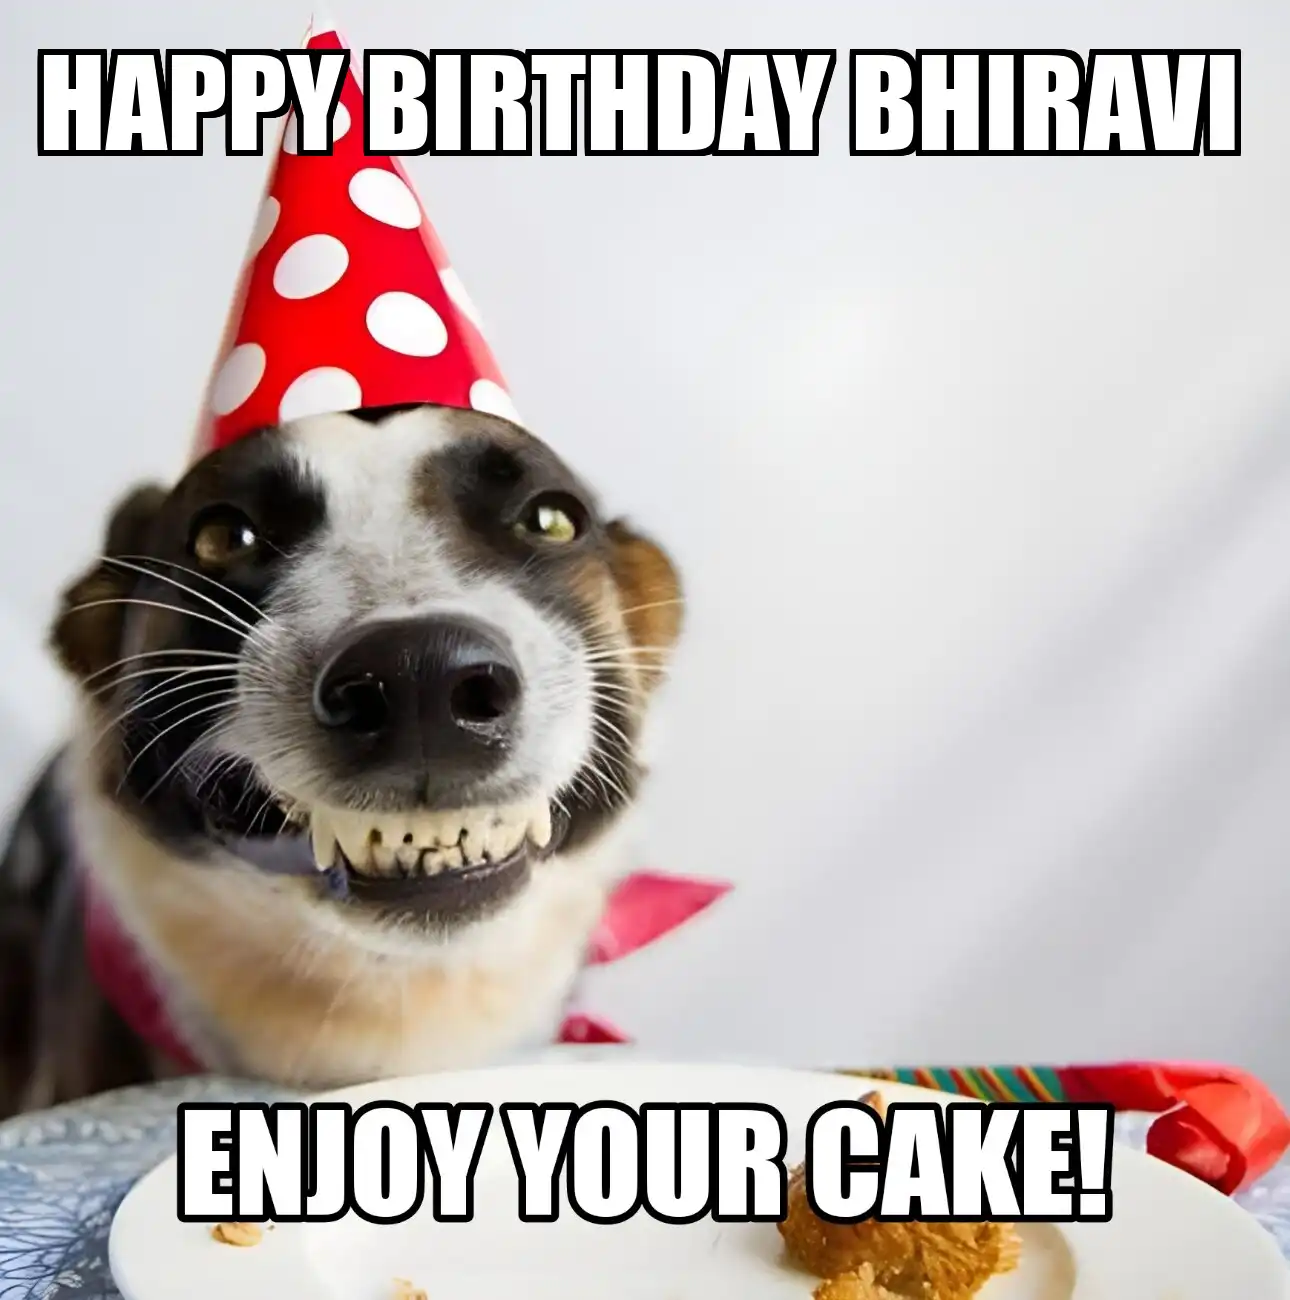 Happy Birthday Bhiravi Enjoy Your Cake Dog Meme